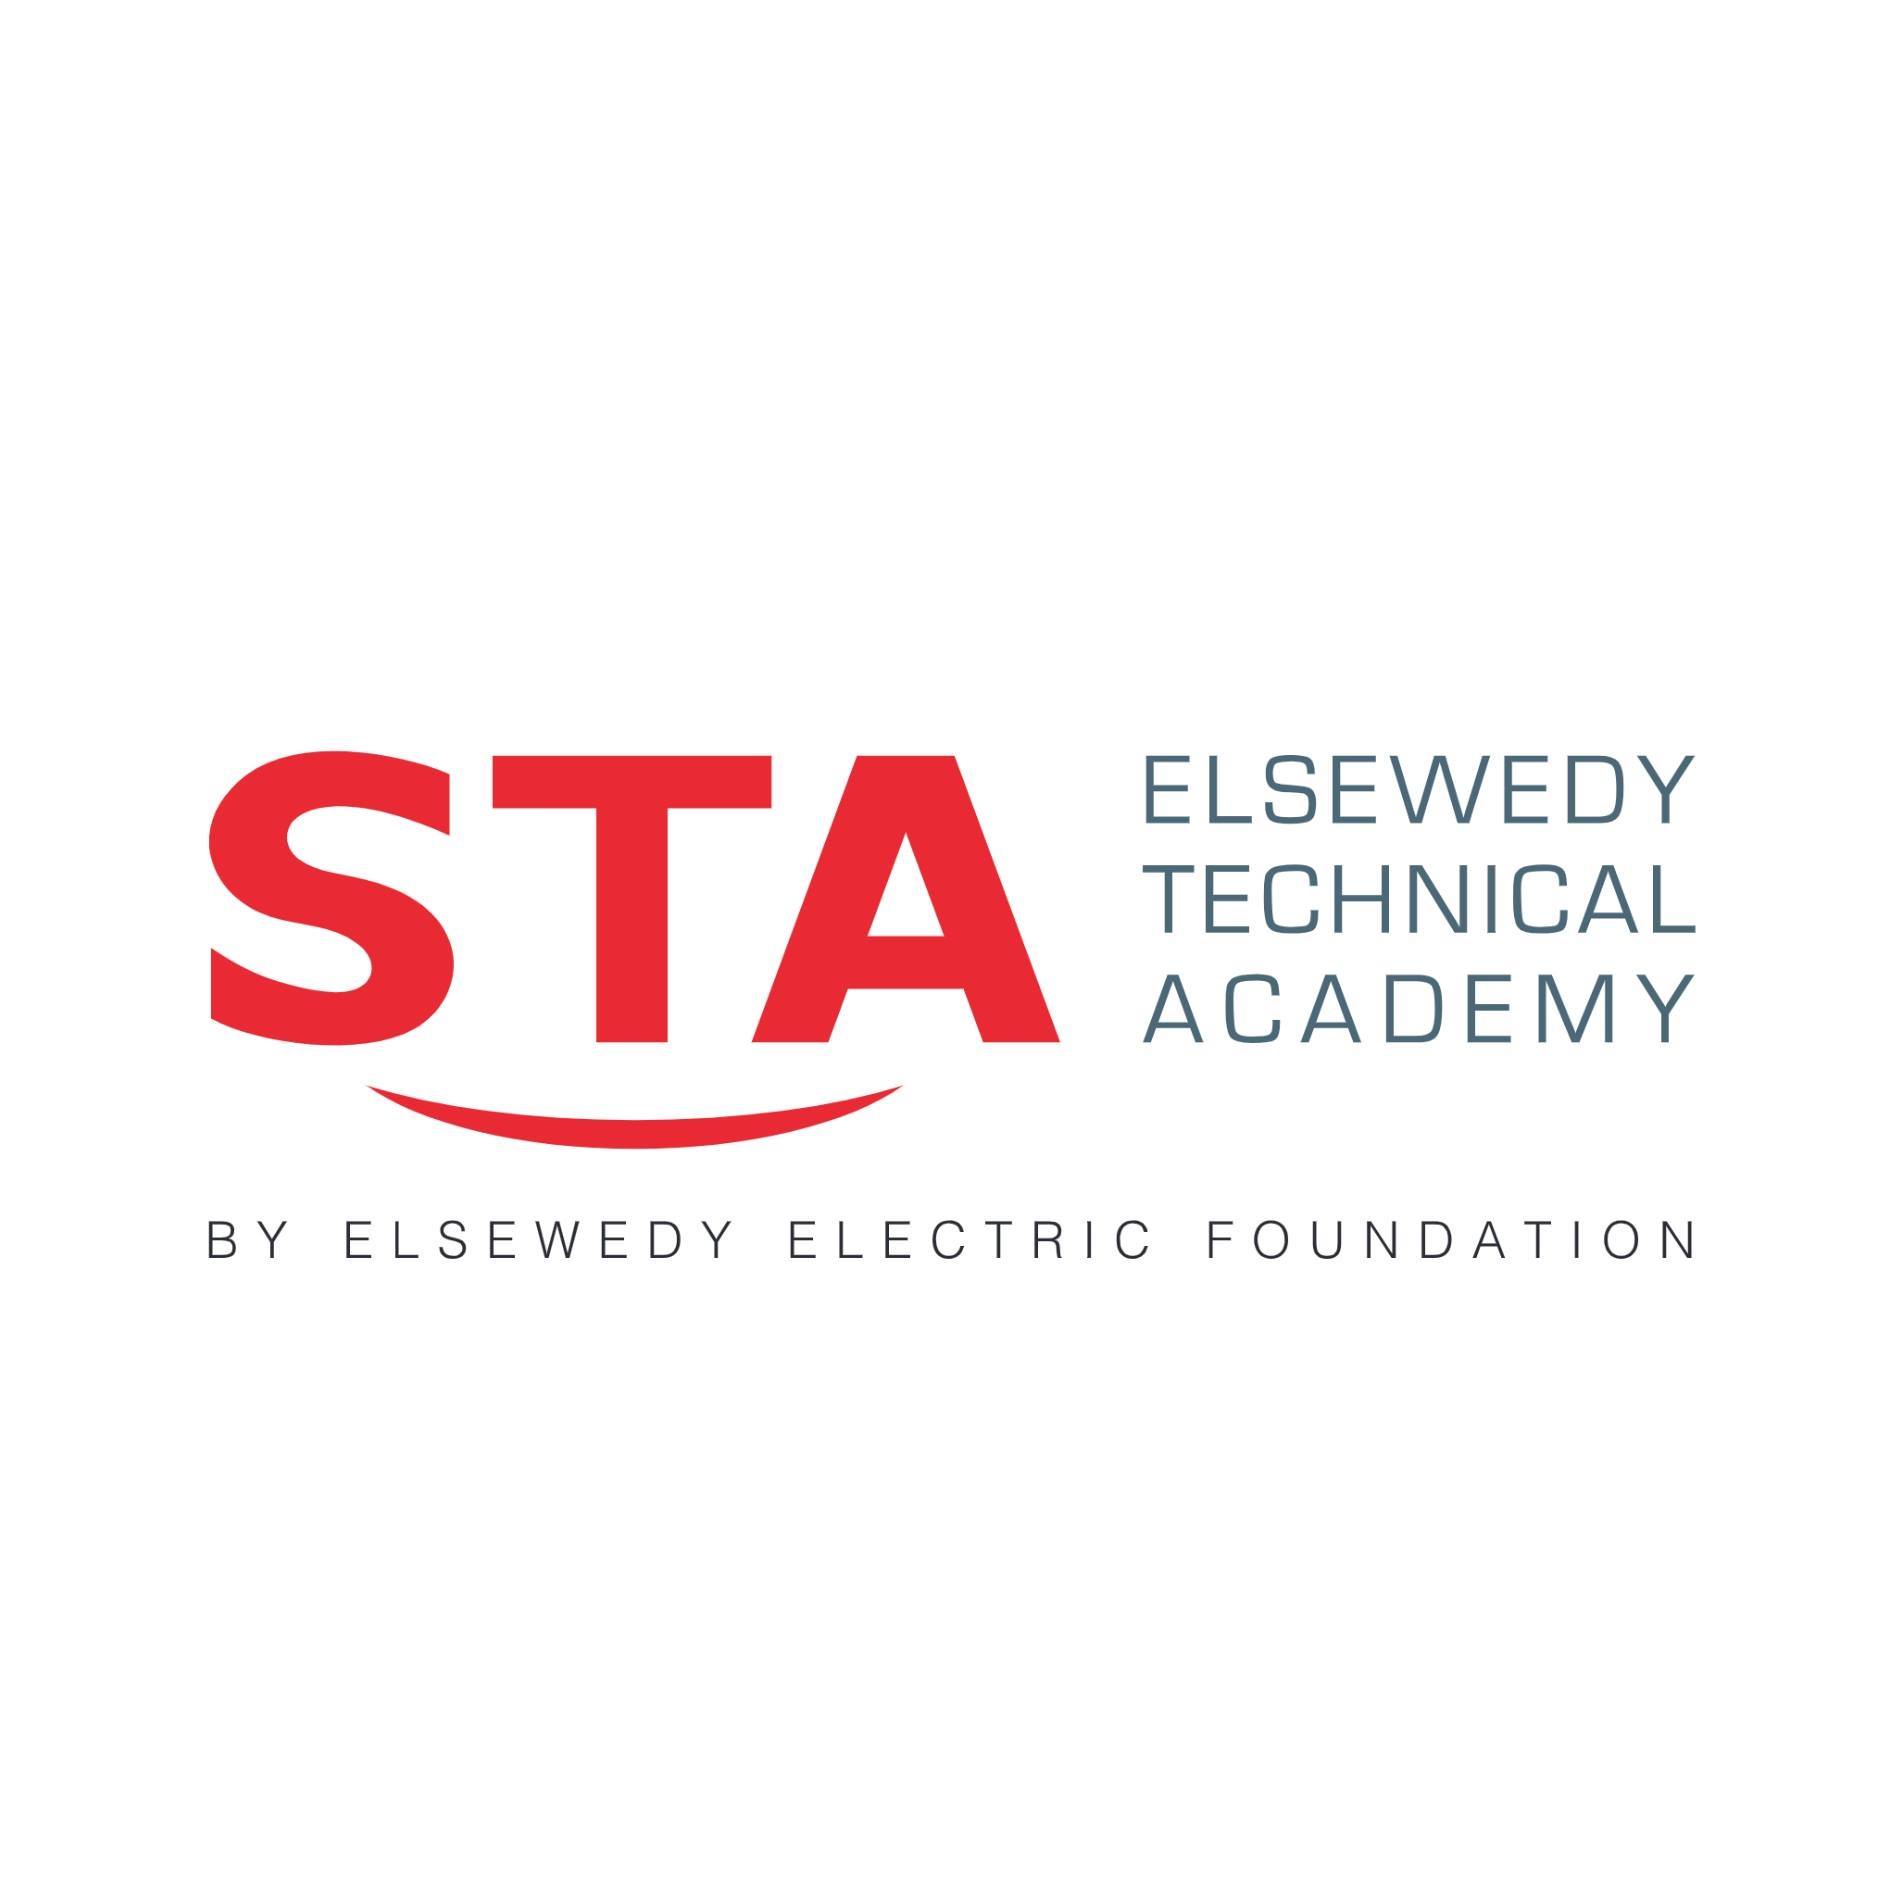 El-Sewedy technical Academy